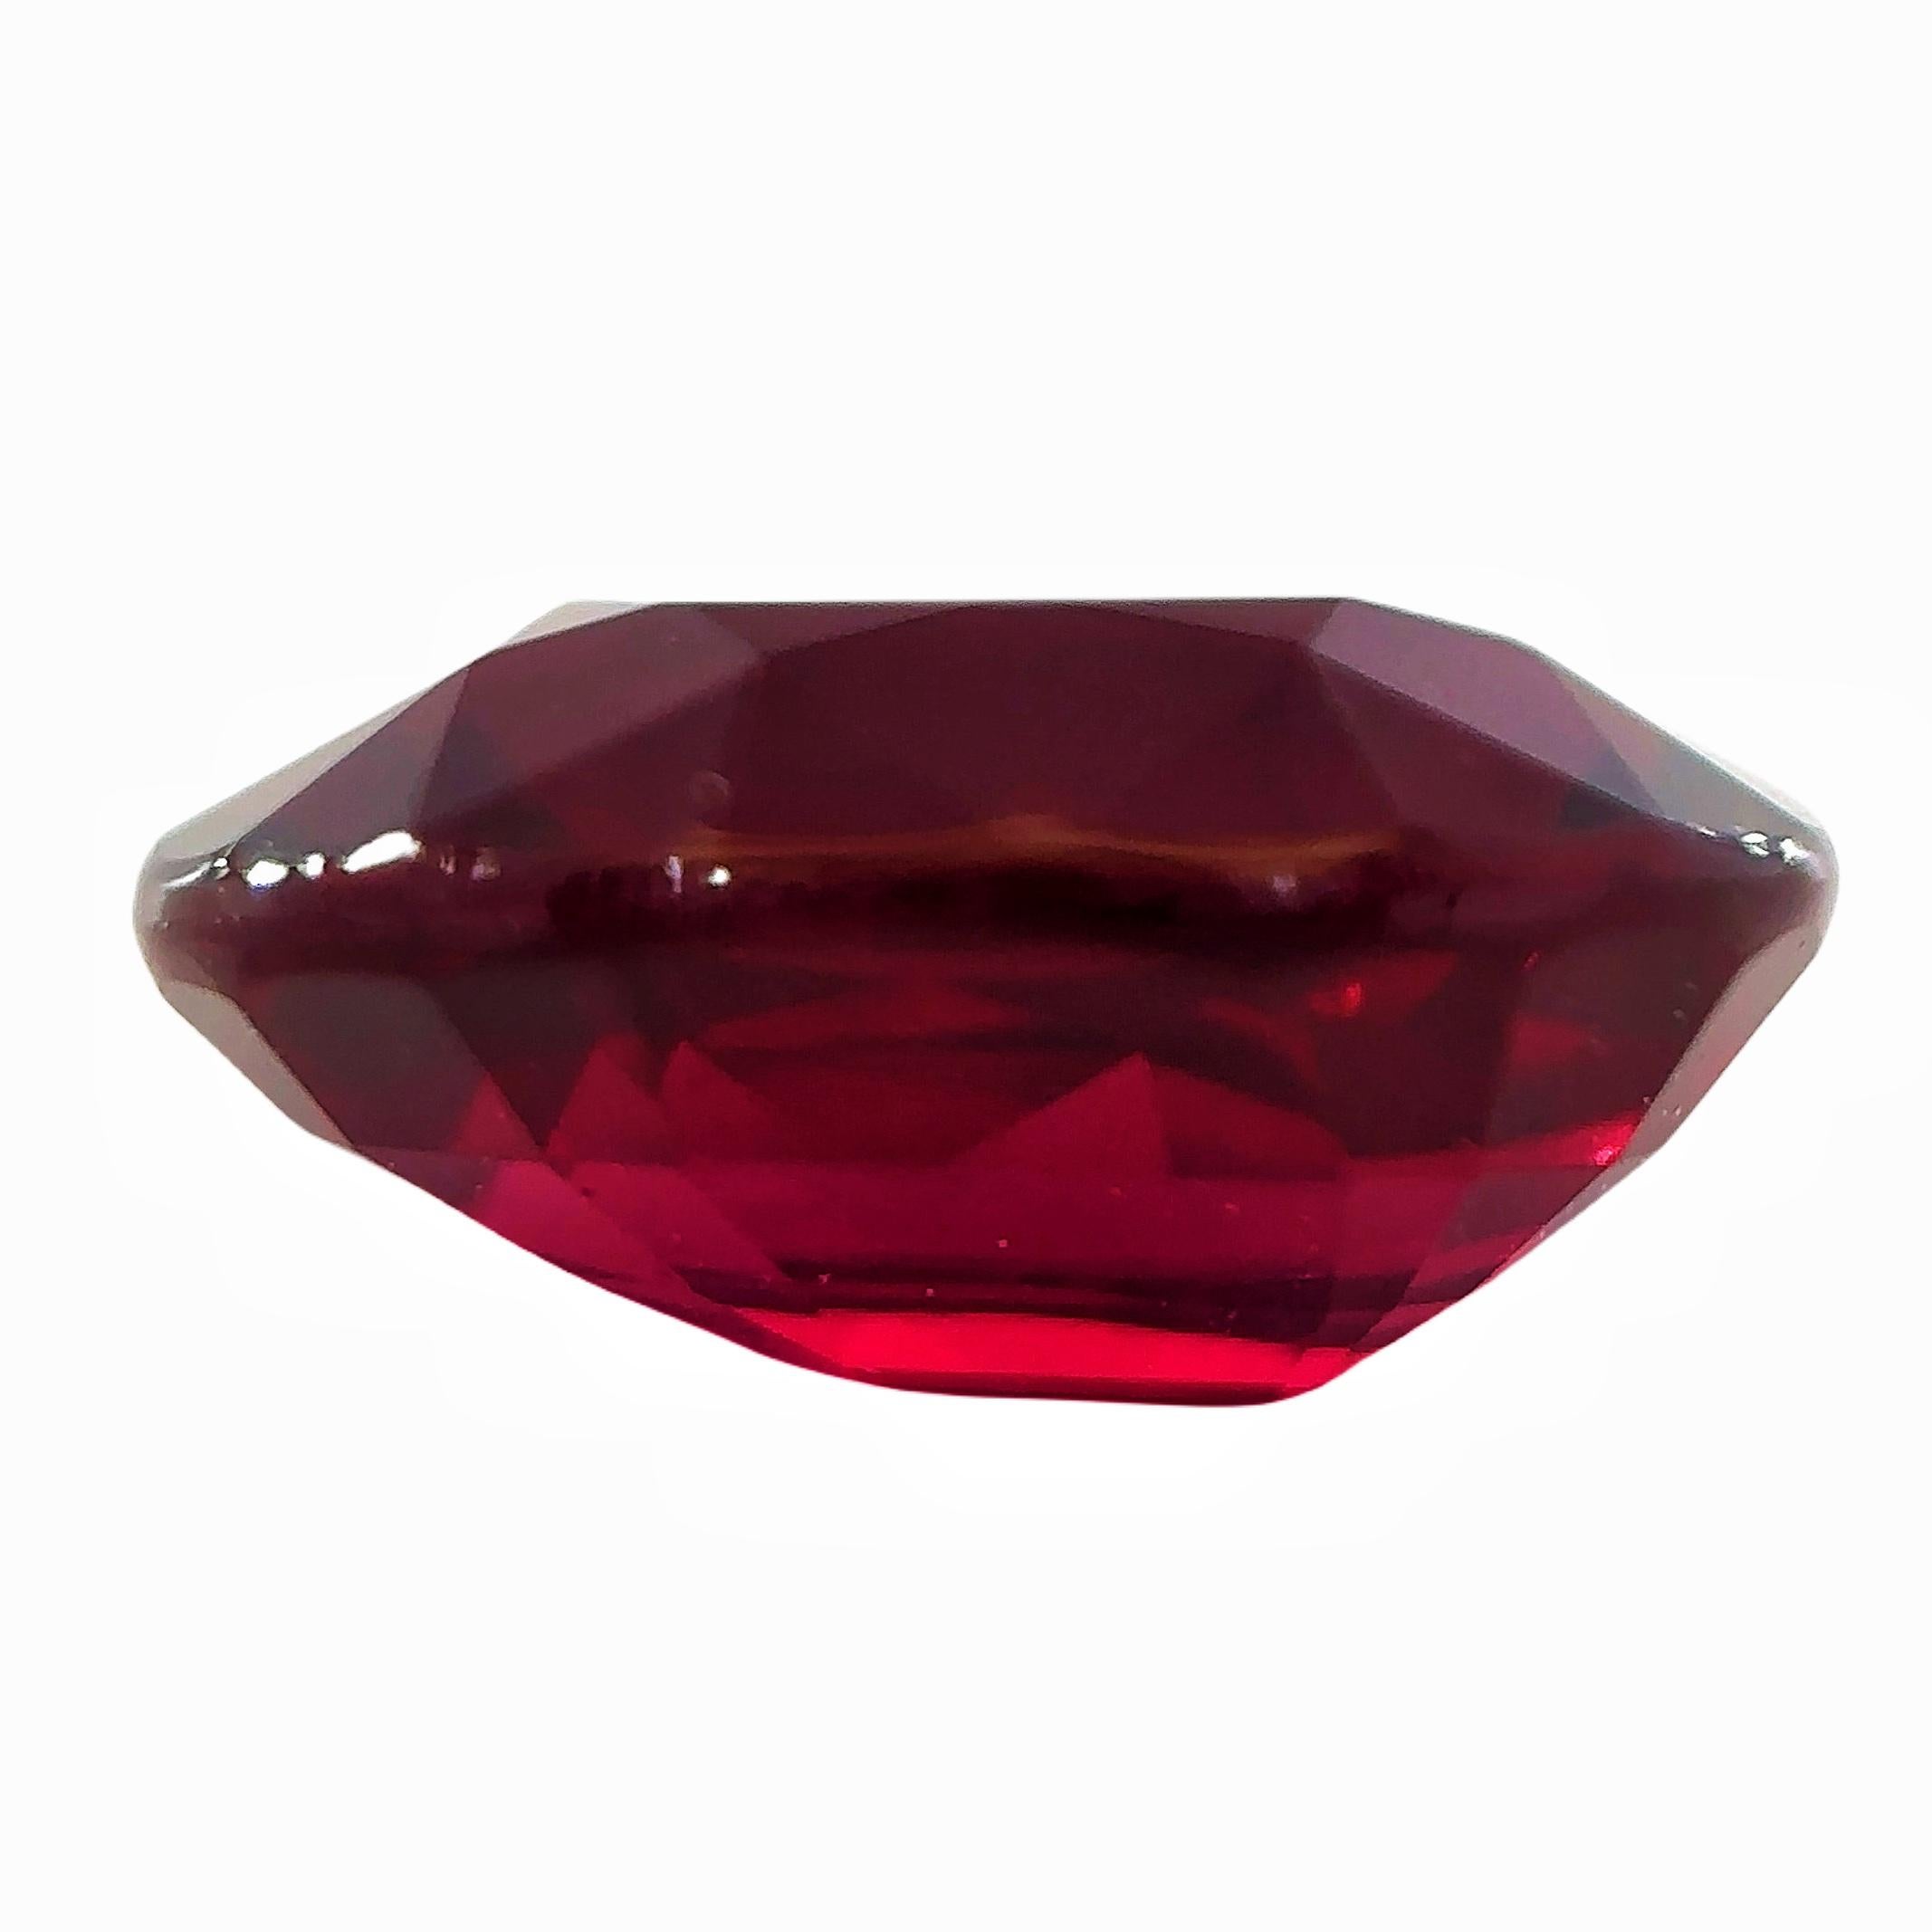 Taille ovale GRS Certified 3.03 Carat Natural Unheated Mozambique Ruby Loose Stone (Rubis du Mozambique non chauffé certifié GRS) en vente